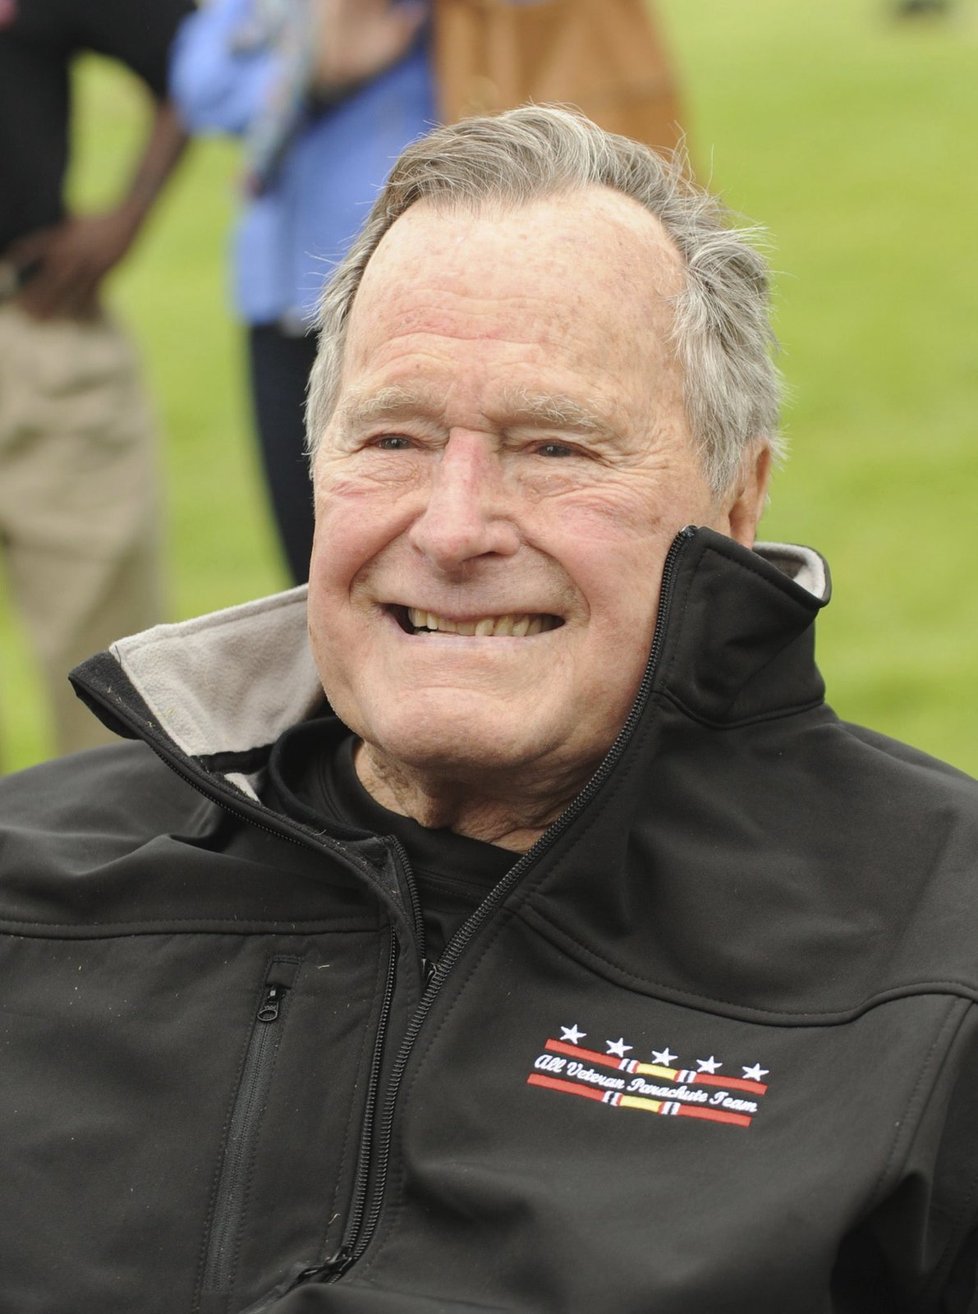 George Bush st. byl 41. prezidentem USA - v letech 1989 až 1993.